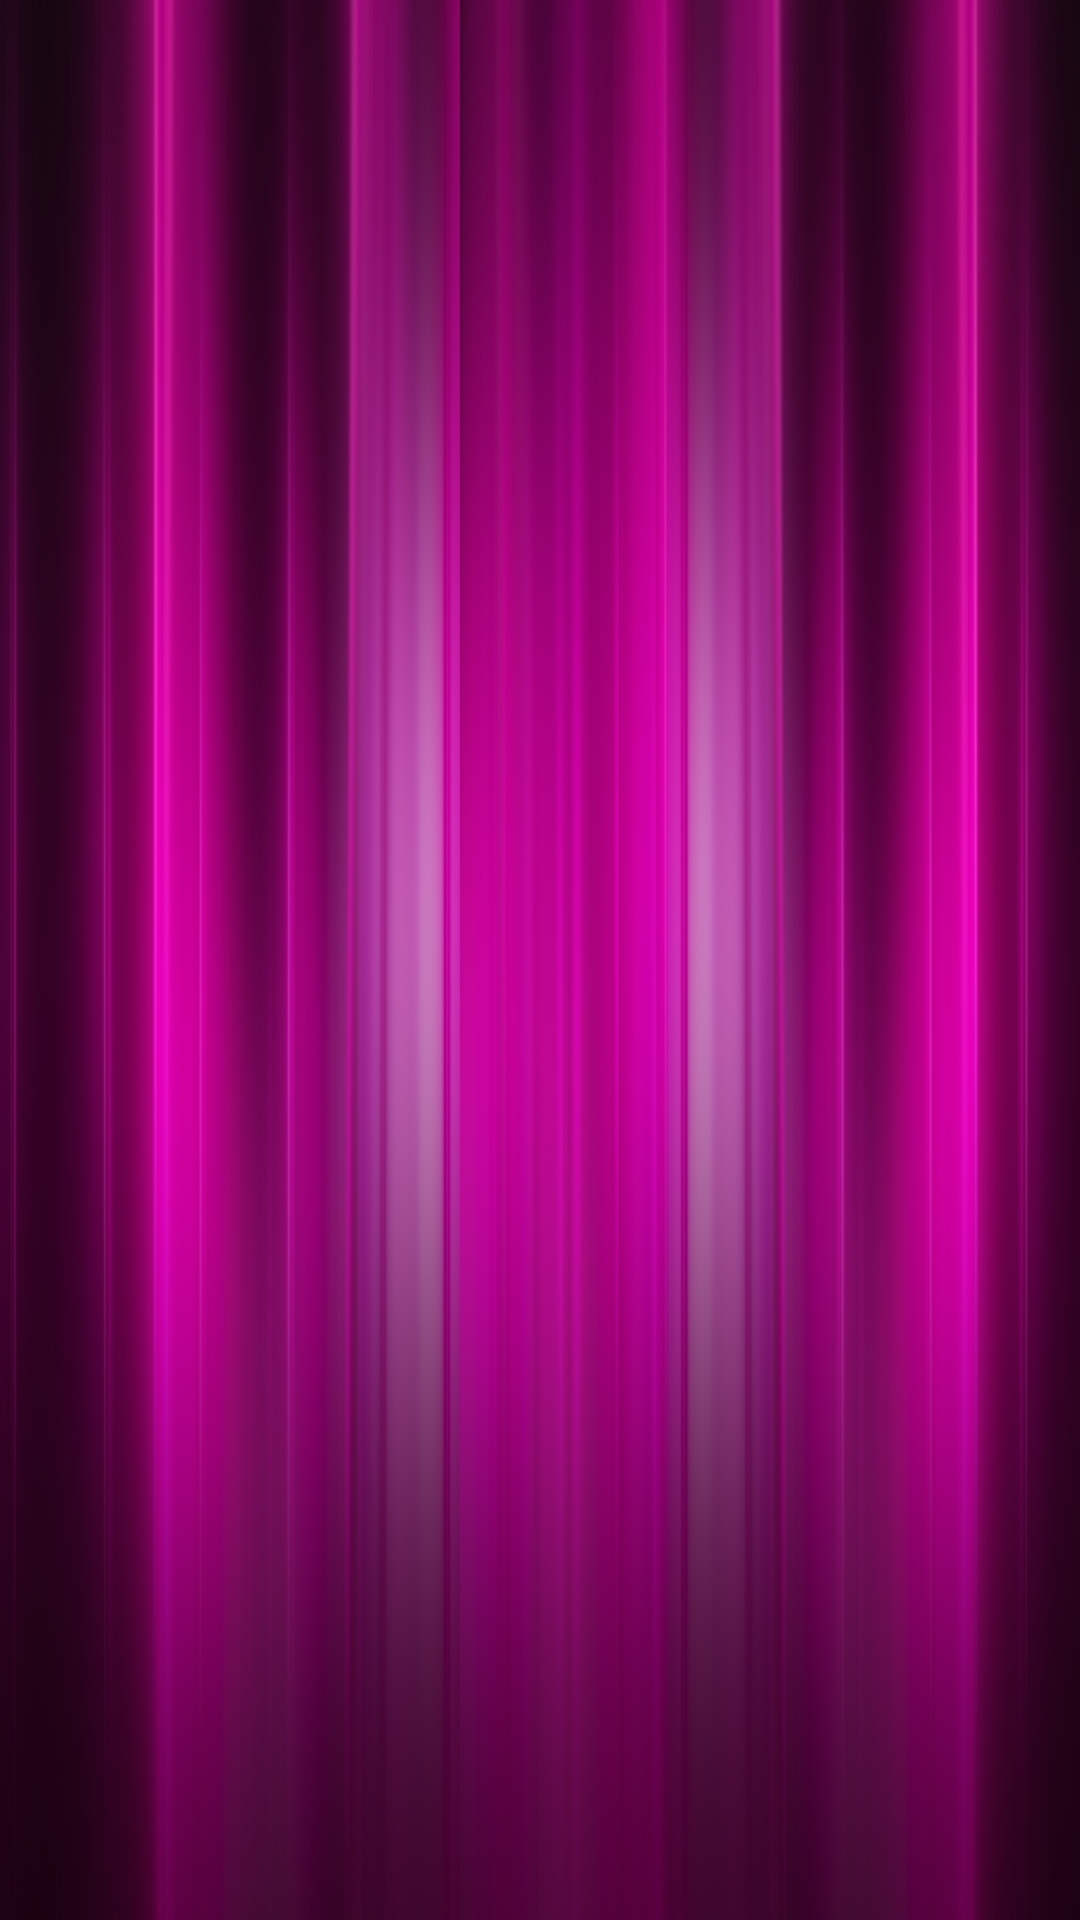 1194172 Dark Pink Background Images Stock Photos  Vectors  Shutterstock